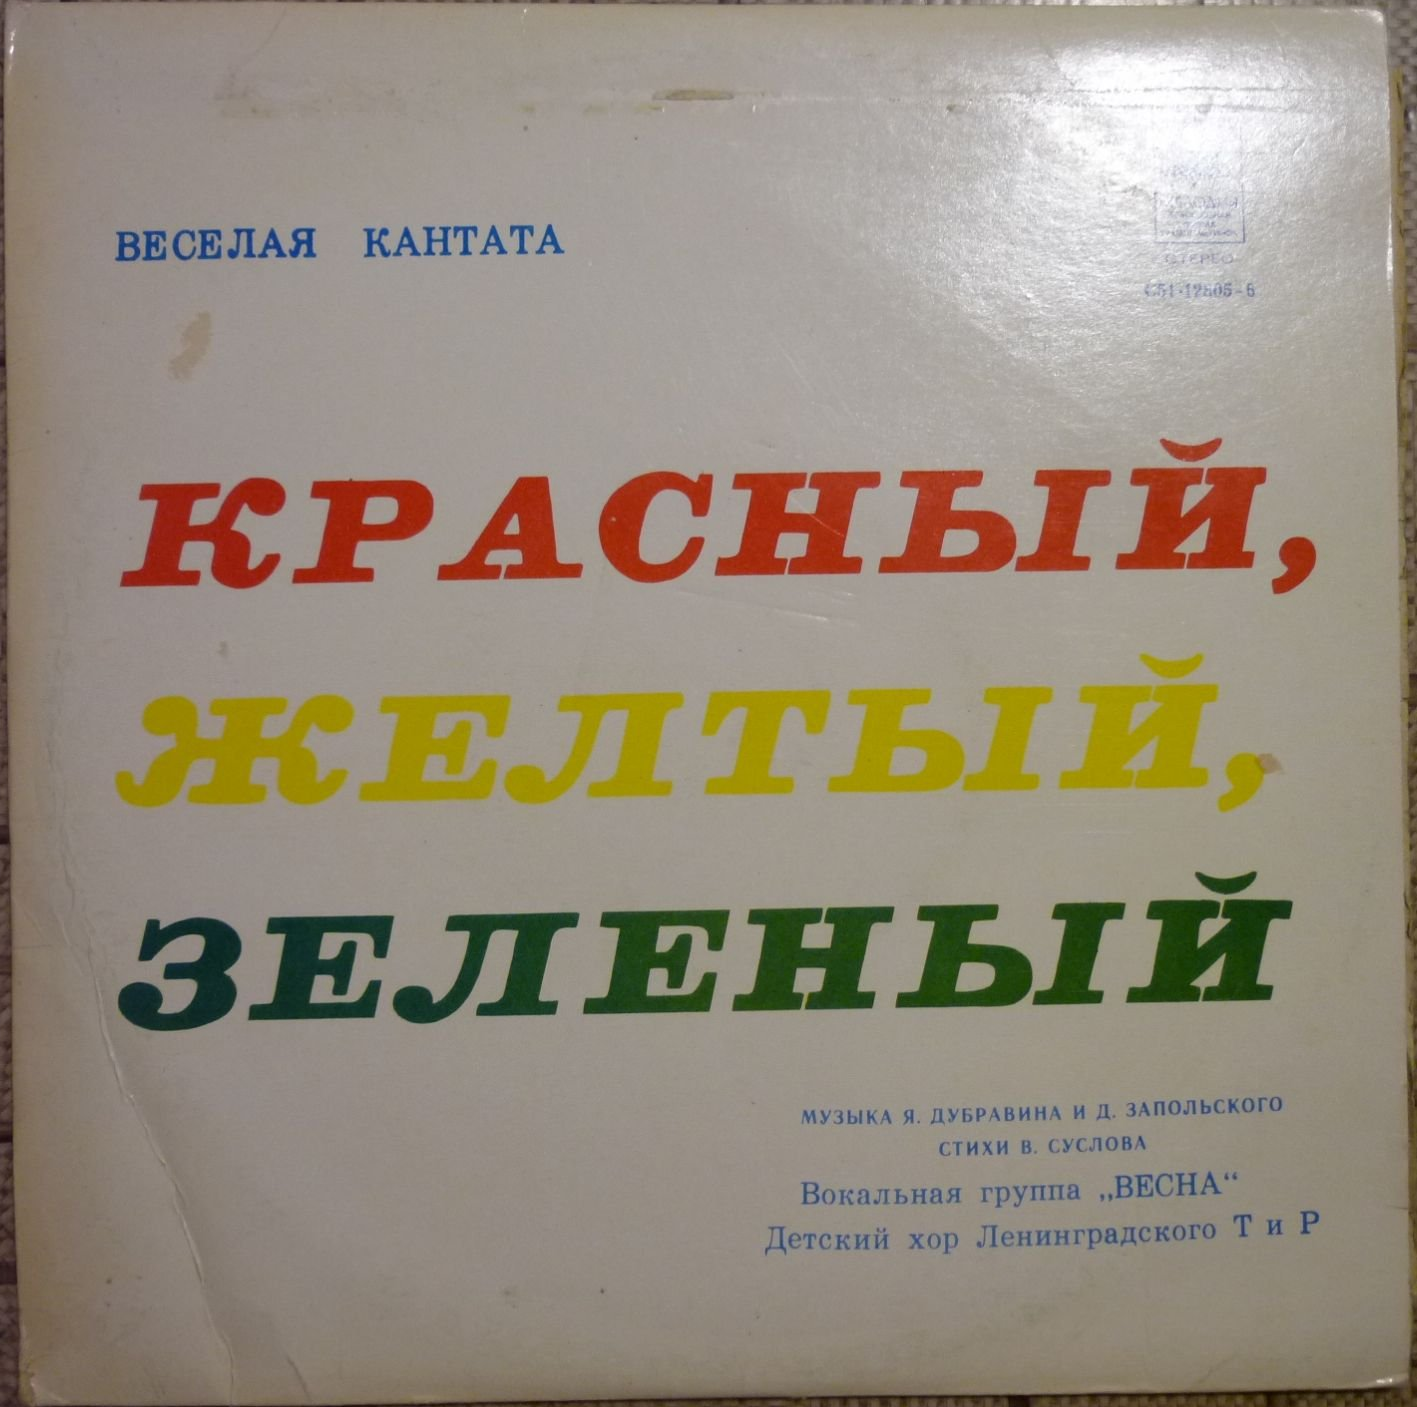 Я. ДУБРАВИН (1939) и Д. ЗАПОЛЬСКИЙ (1947): «Красный, желтый, зеленый», веселая кантата (Стихи В. Суслова)